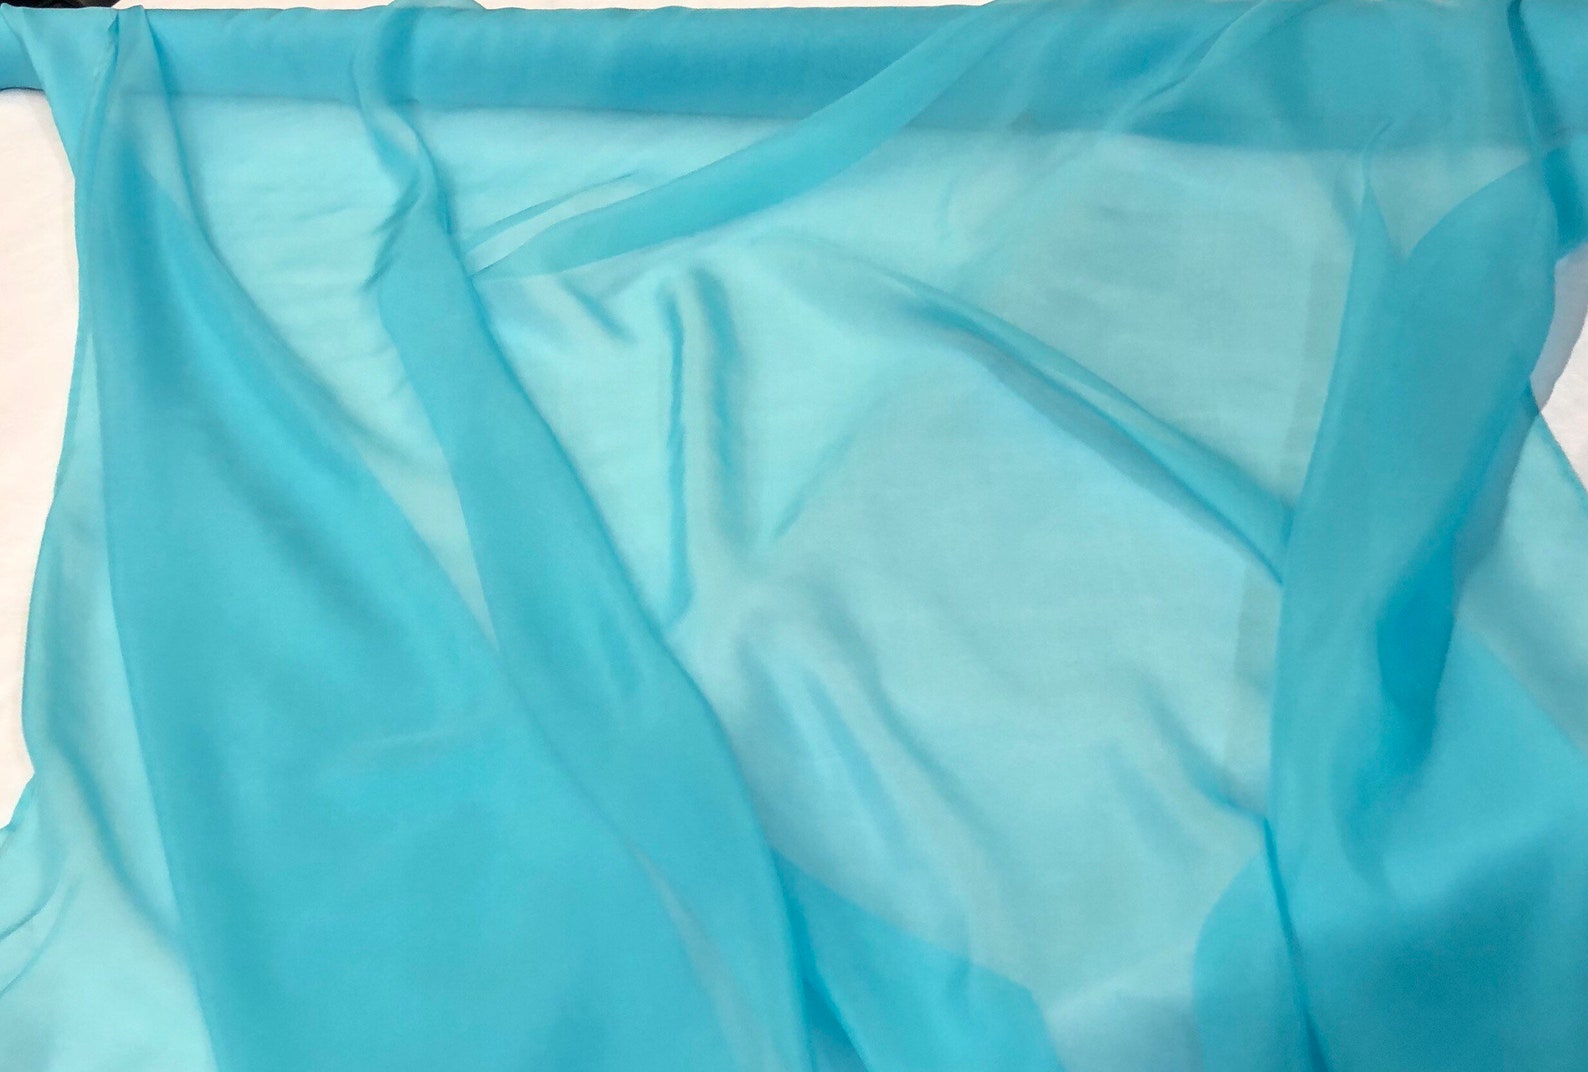 Silk chiffon 54 wide Beautiful aqua blue color silk | Etsy